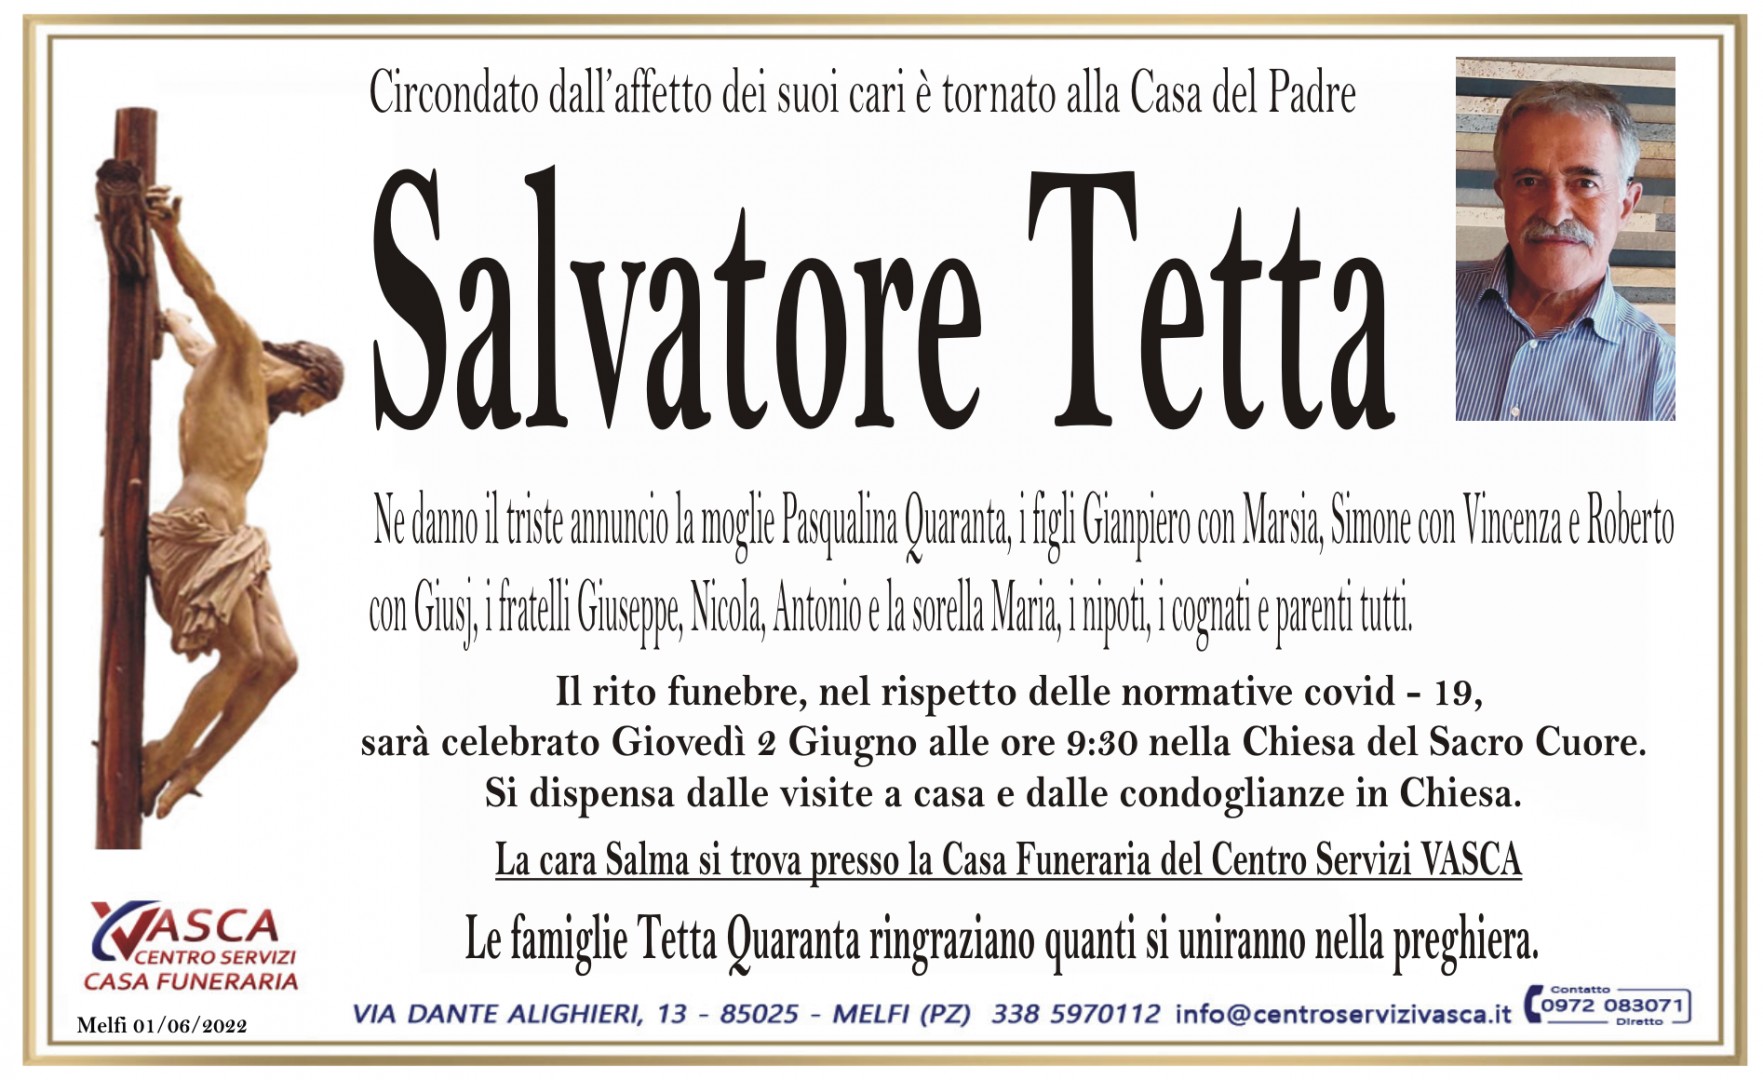 Salvatore Tetta